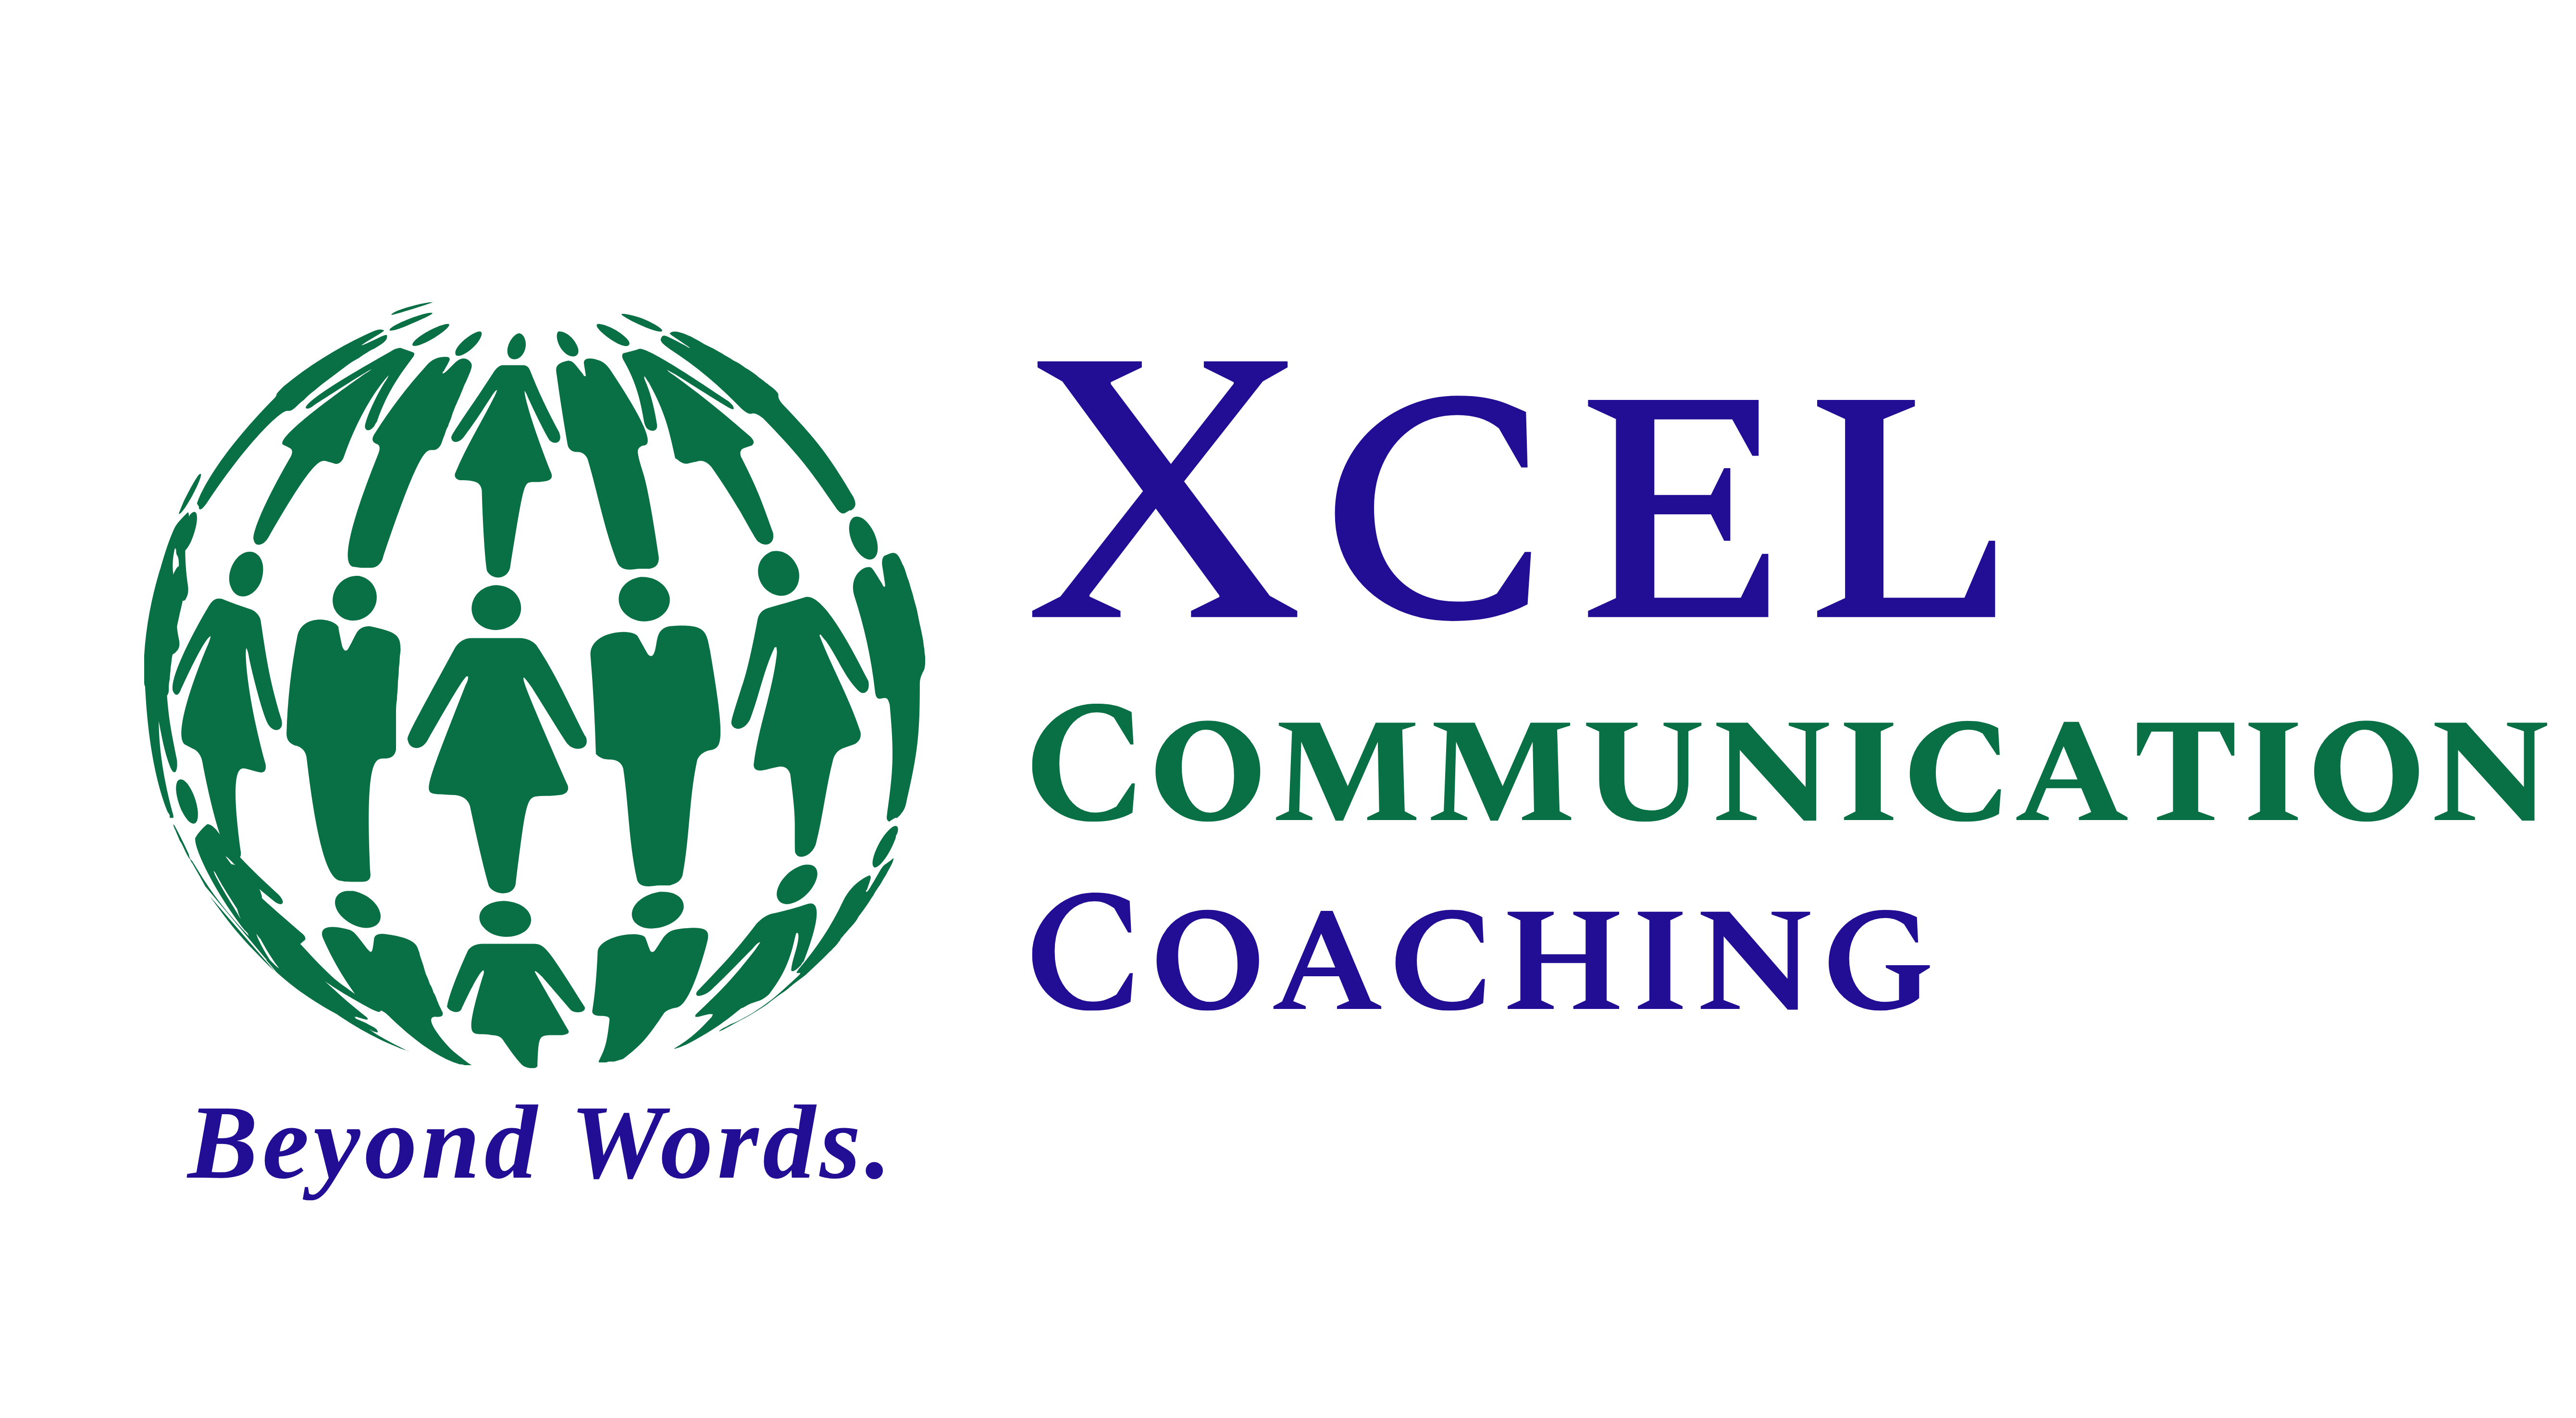 XCEL Communication Coaching